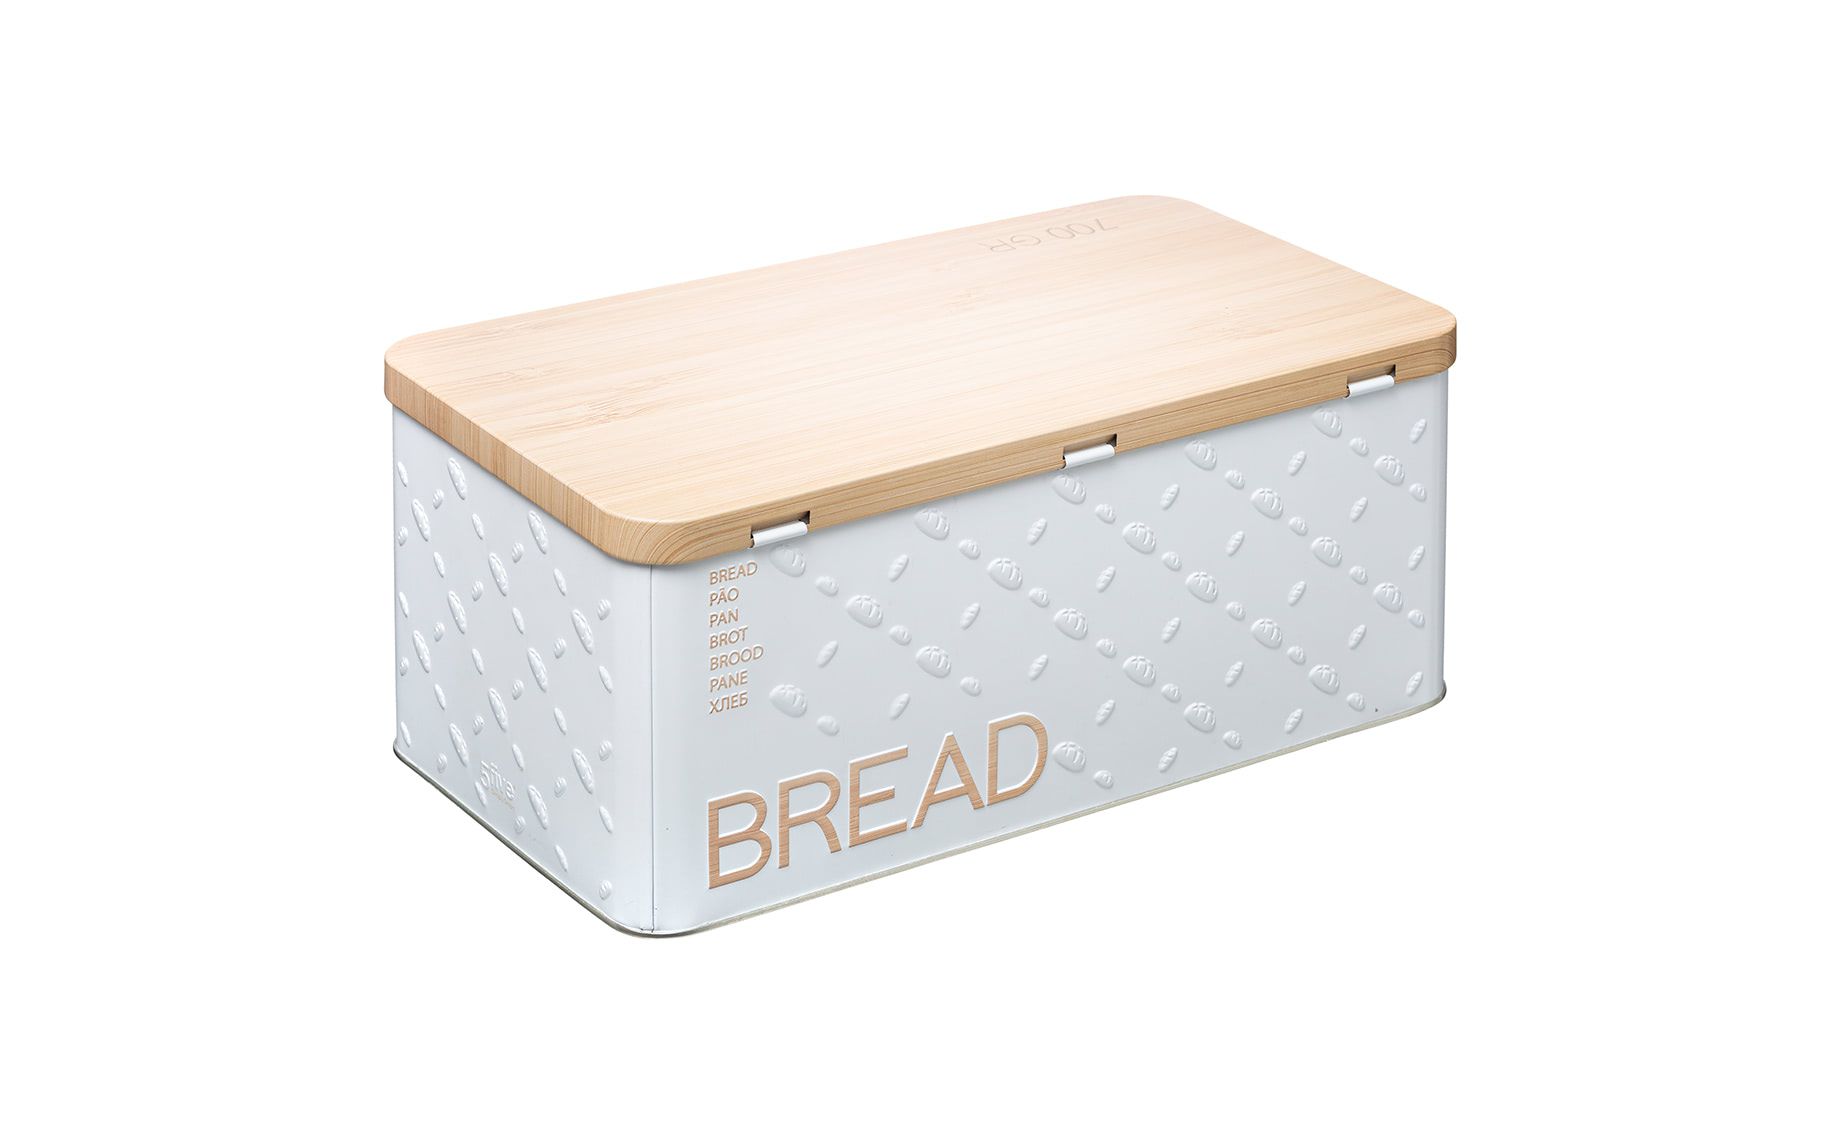 Kutija za kruh Devon